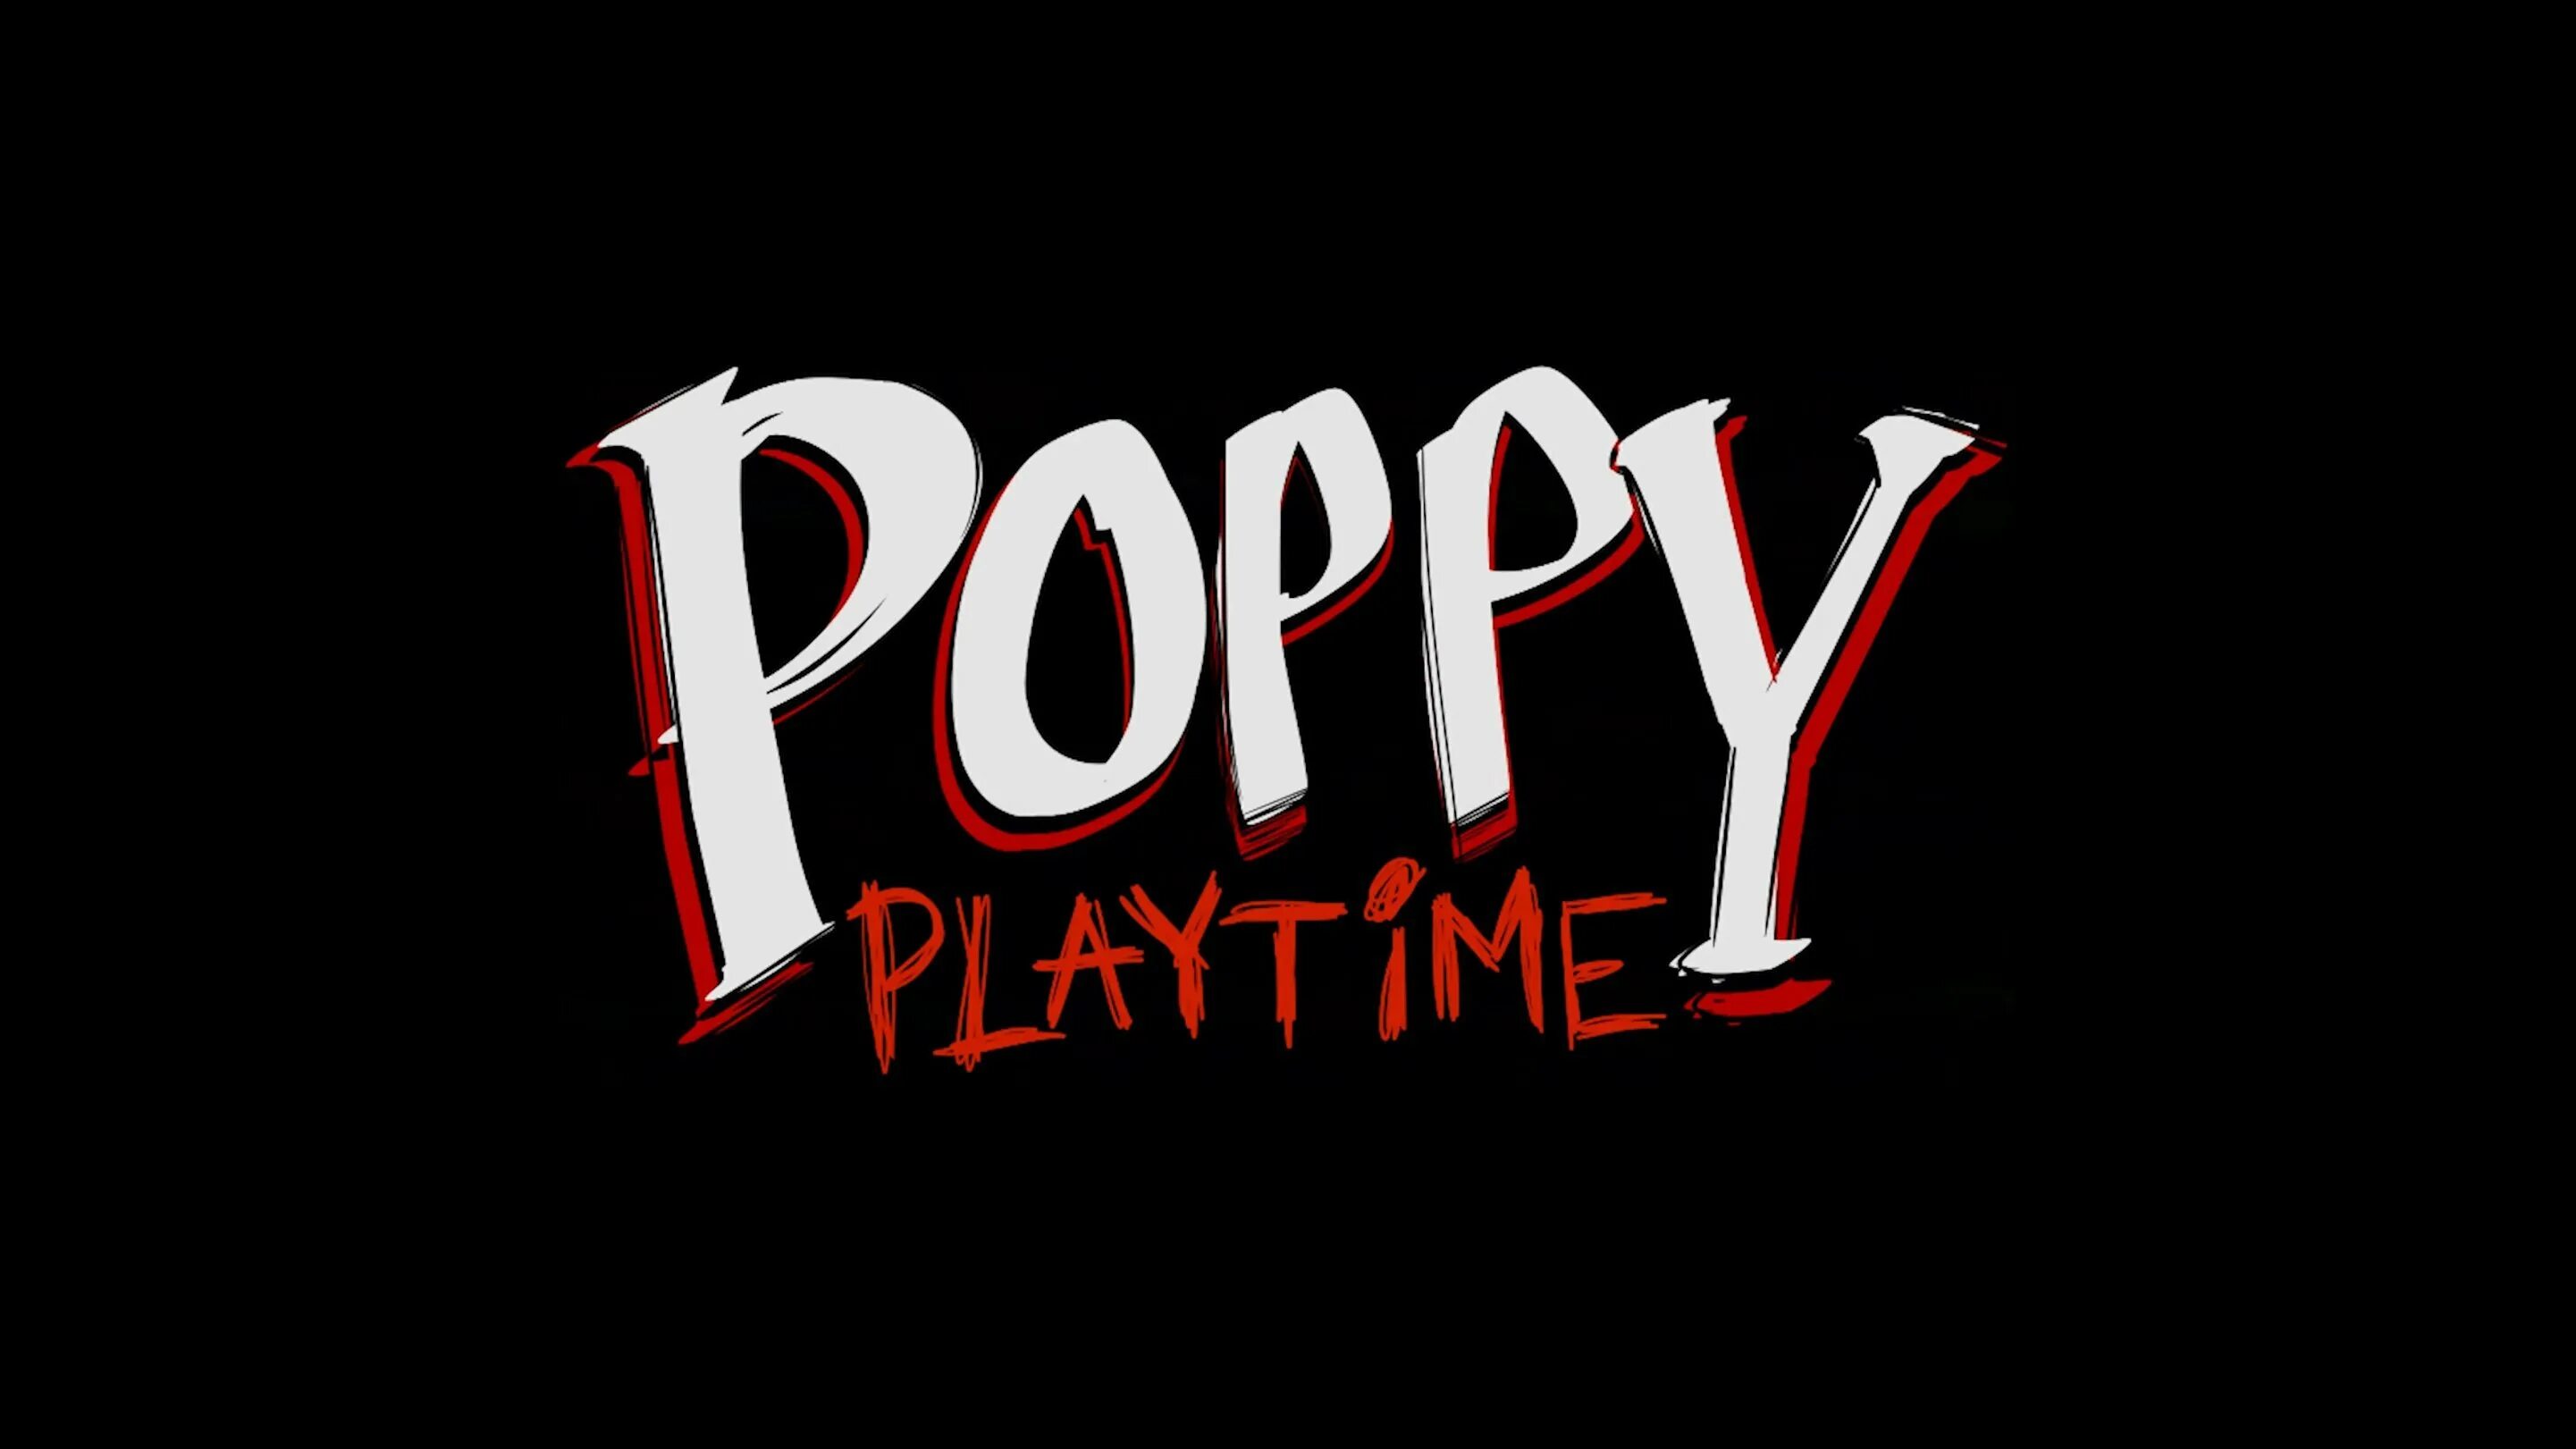 Poppy playtime movie. Poppy Playtime. Poppy Playtime надпись. Poppy Playtime 2 надпись. Poppy Playtime 1.